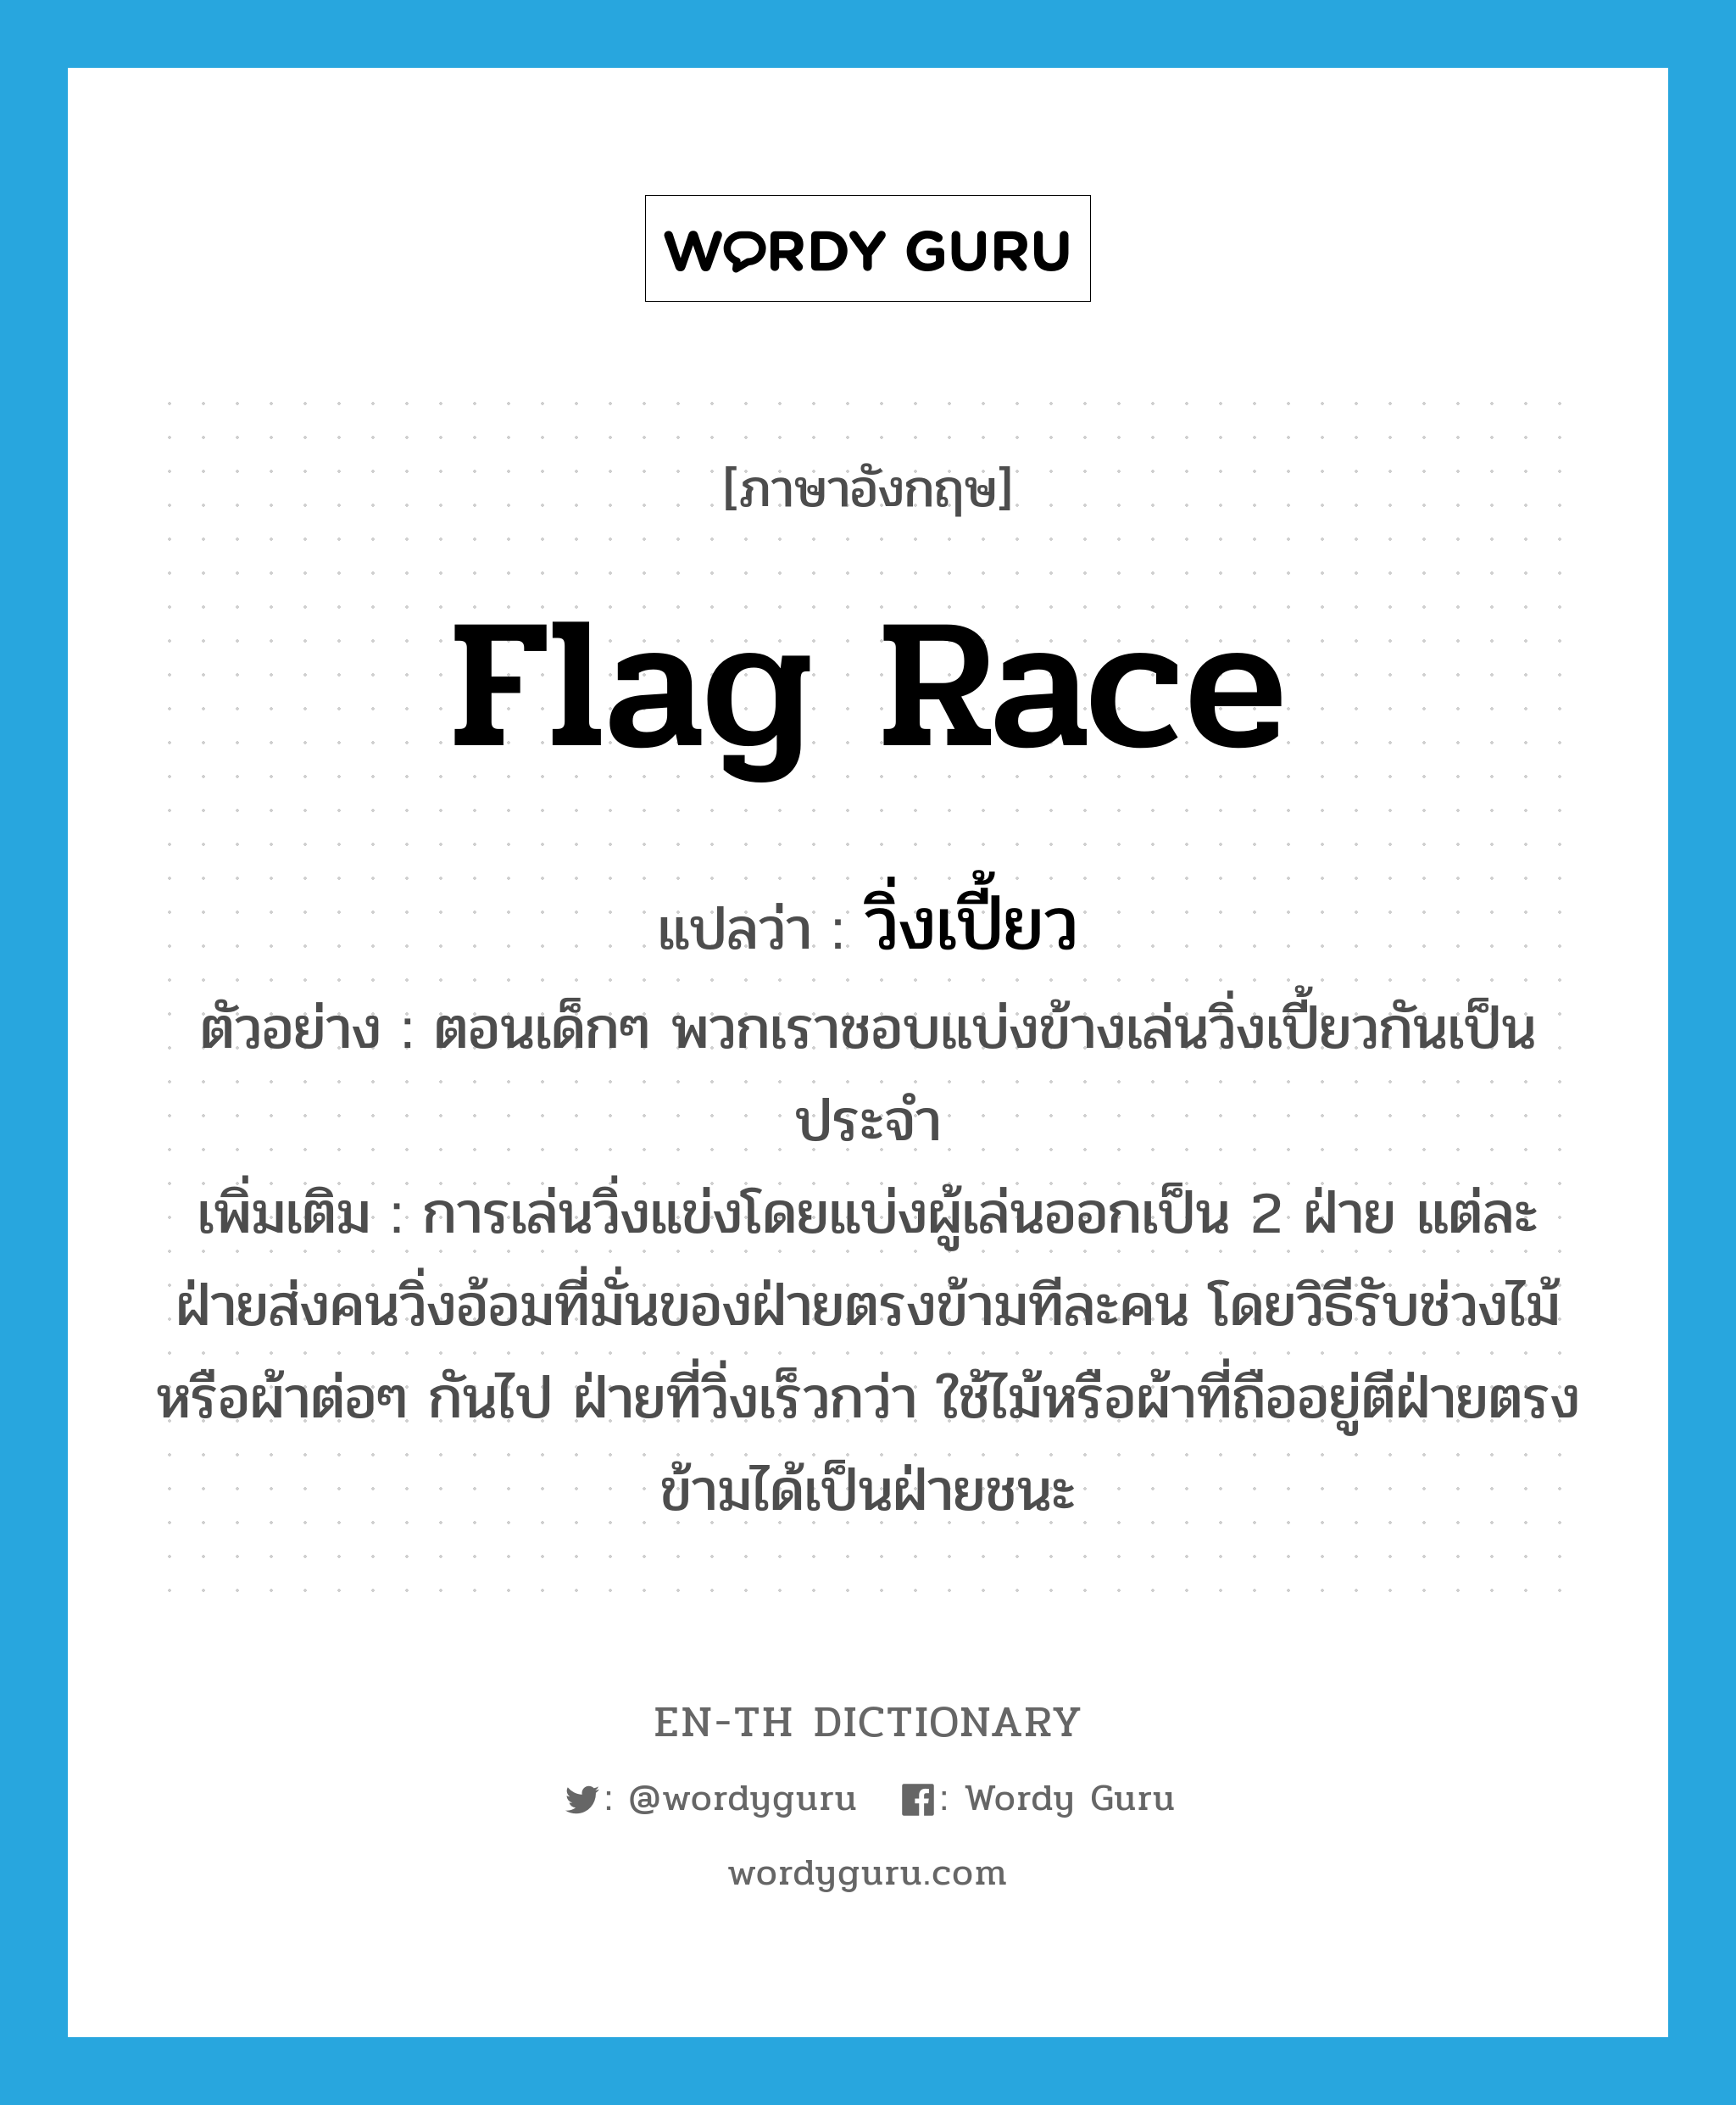 flag race แปลว่า?, คำศัพท์ภาษาอังกฤษ flag race แปลว่า วิ่งเปี้ยว ประเภท N ตัวอย่าง ตอนเด็กๆ พวกเราชอบแบ่งข้างเล่นวิ่งเปี้ยวกันเป็นประจำ เพิ่มเติม การเล่นวิ่งแข่งโดยแบ่งผู้เล่นออกเป็น 2 ฝ่าย แต่ละฝ่ายส่งคนวิ่งอ้อมที่มั่นของฝ่ายตรงข้ามทีละคน โดยวิธีรับช่วงไม้หรือผ้าต่อๆ กันไป ฝ่ายที่วิ่งเร็วกว่า ใช้ไม้หรือผ้าที่ถืออยู่ตีฝ่ายตรงข้ามได้เป็นฝ่ายชนะ หมวด N